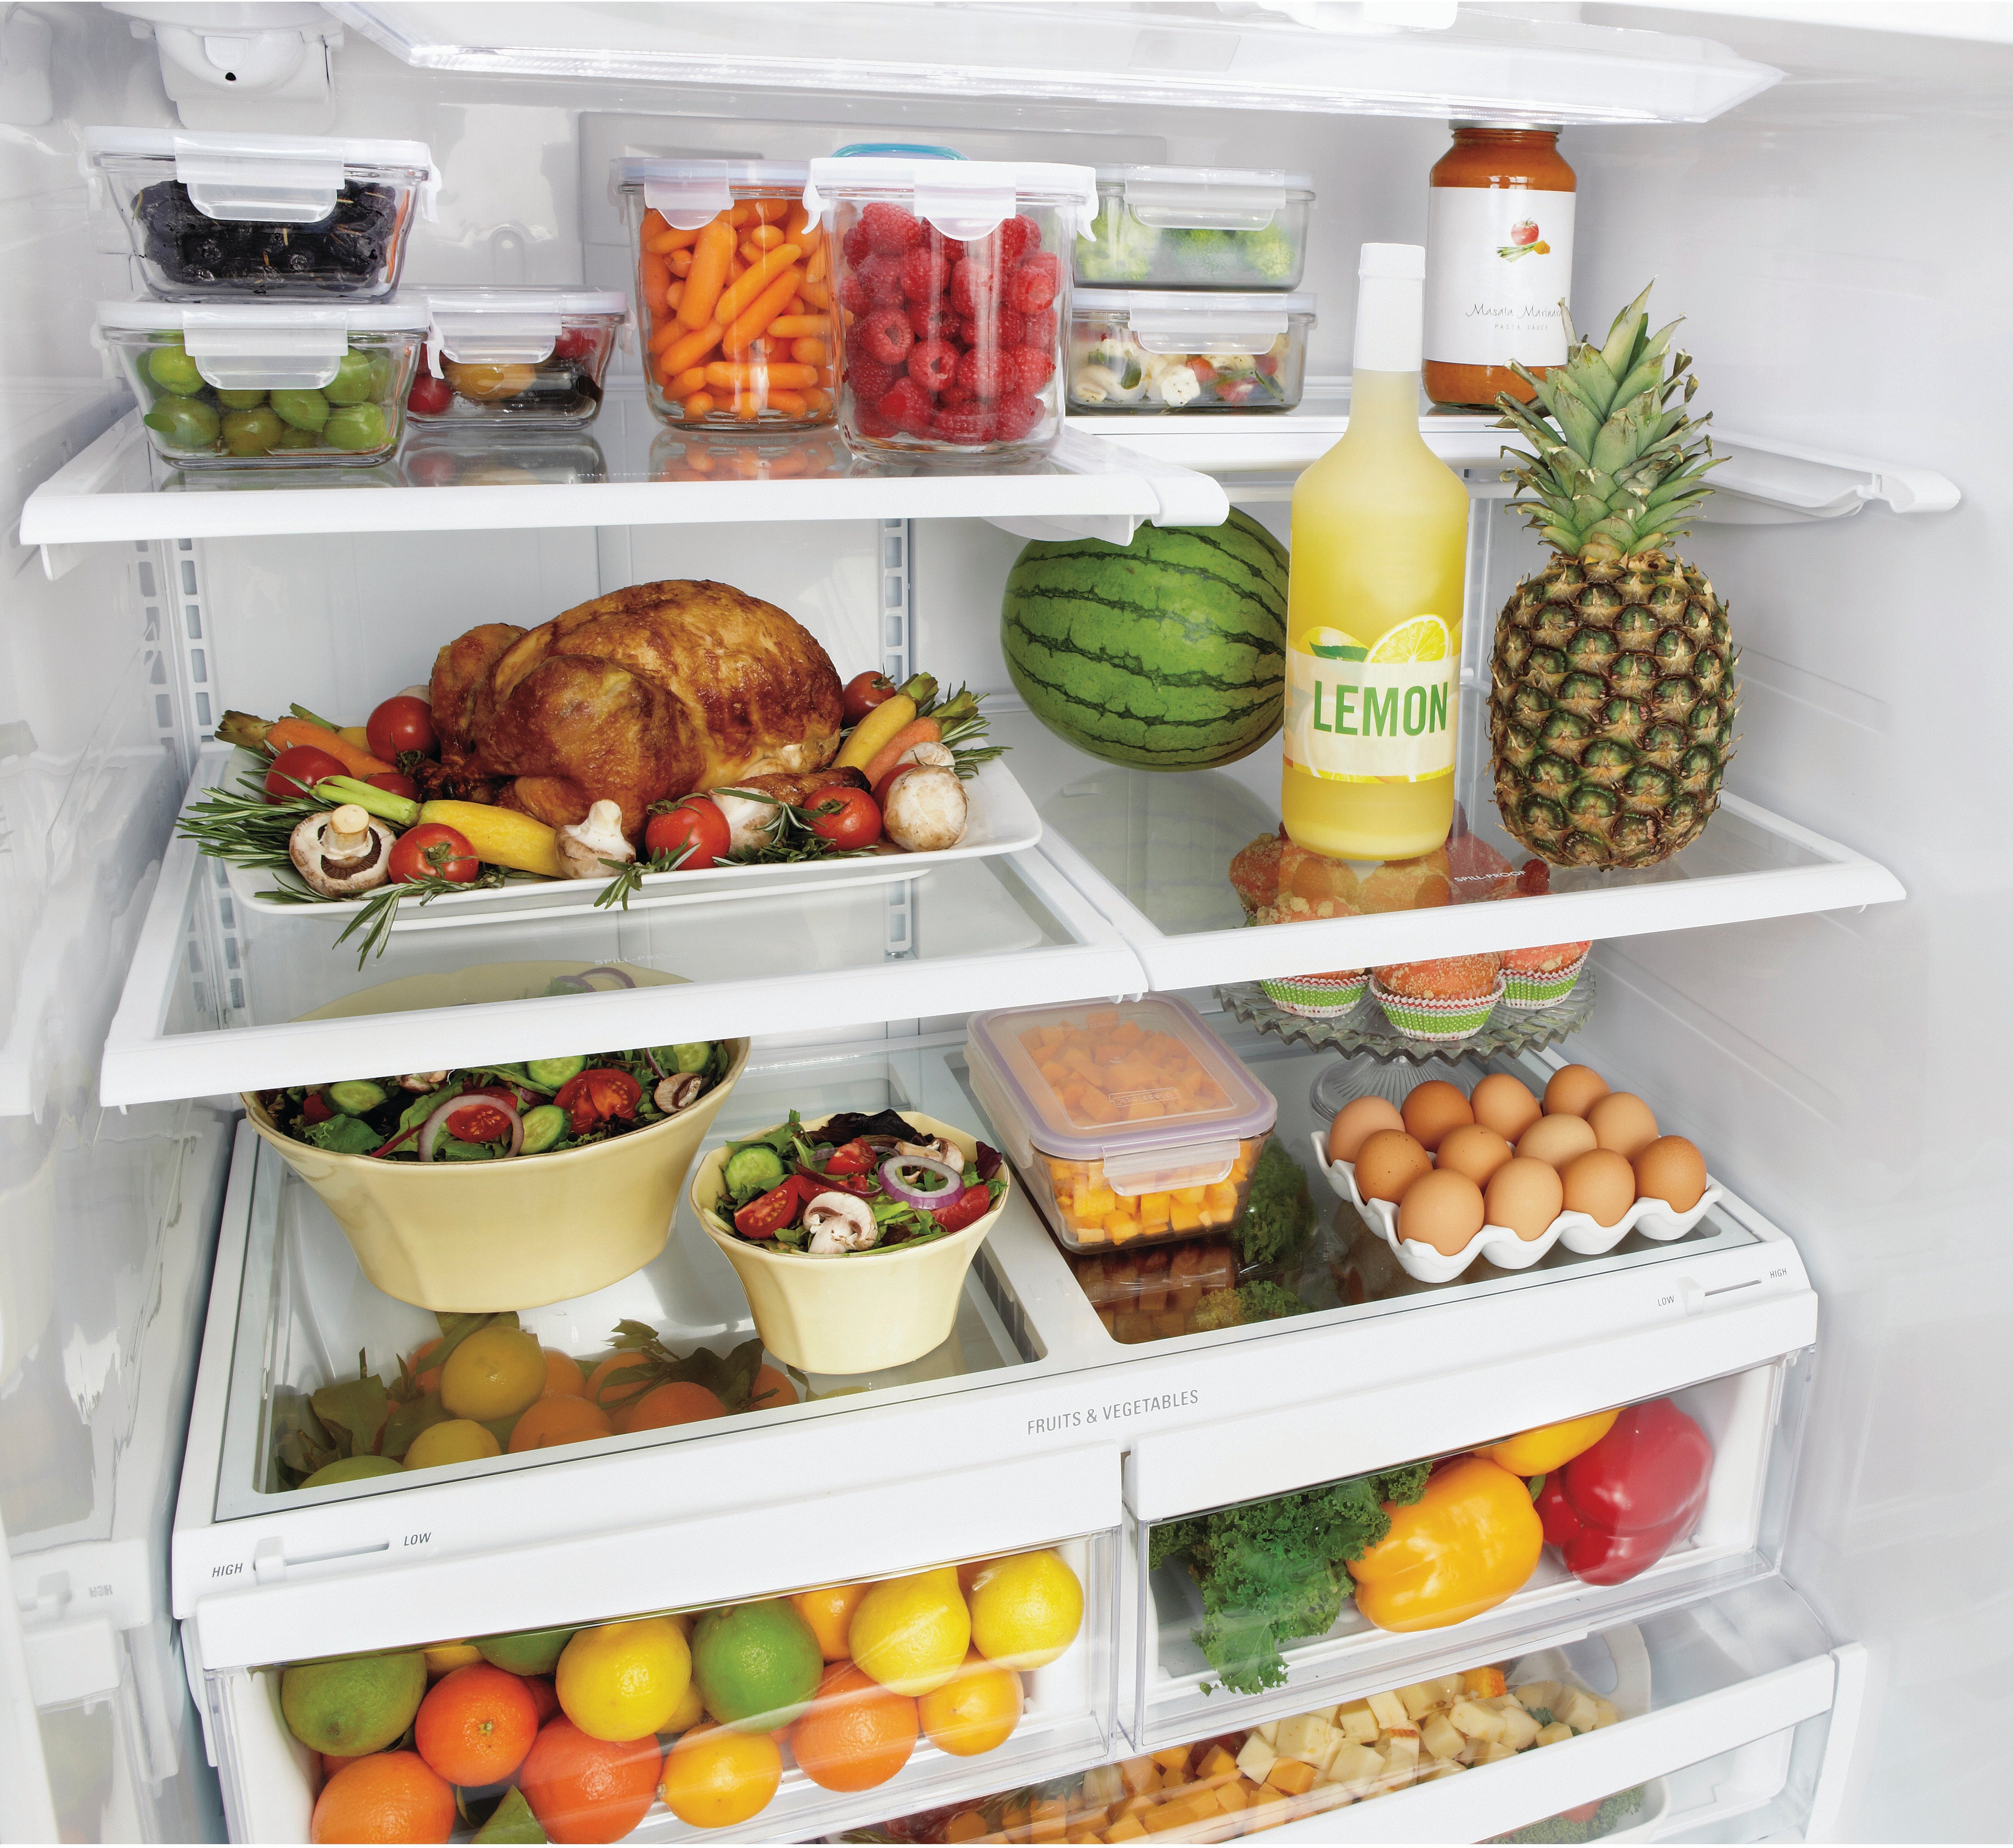 Питание холодильника. Холодильник с продуктами. Полный холодильник продуктов. Открытый холодильник с продуктами. Холодильник с едой.